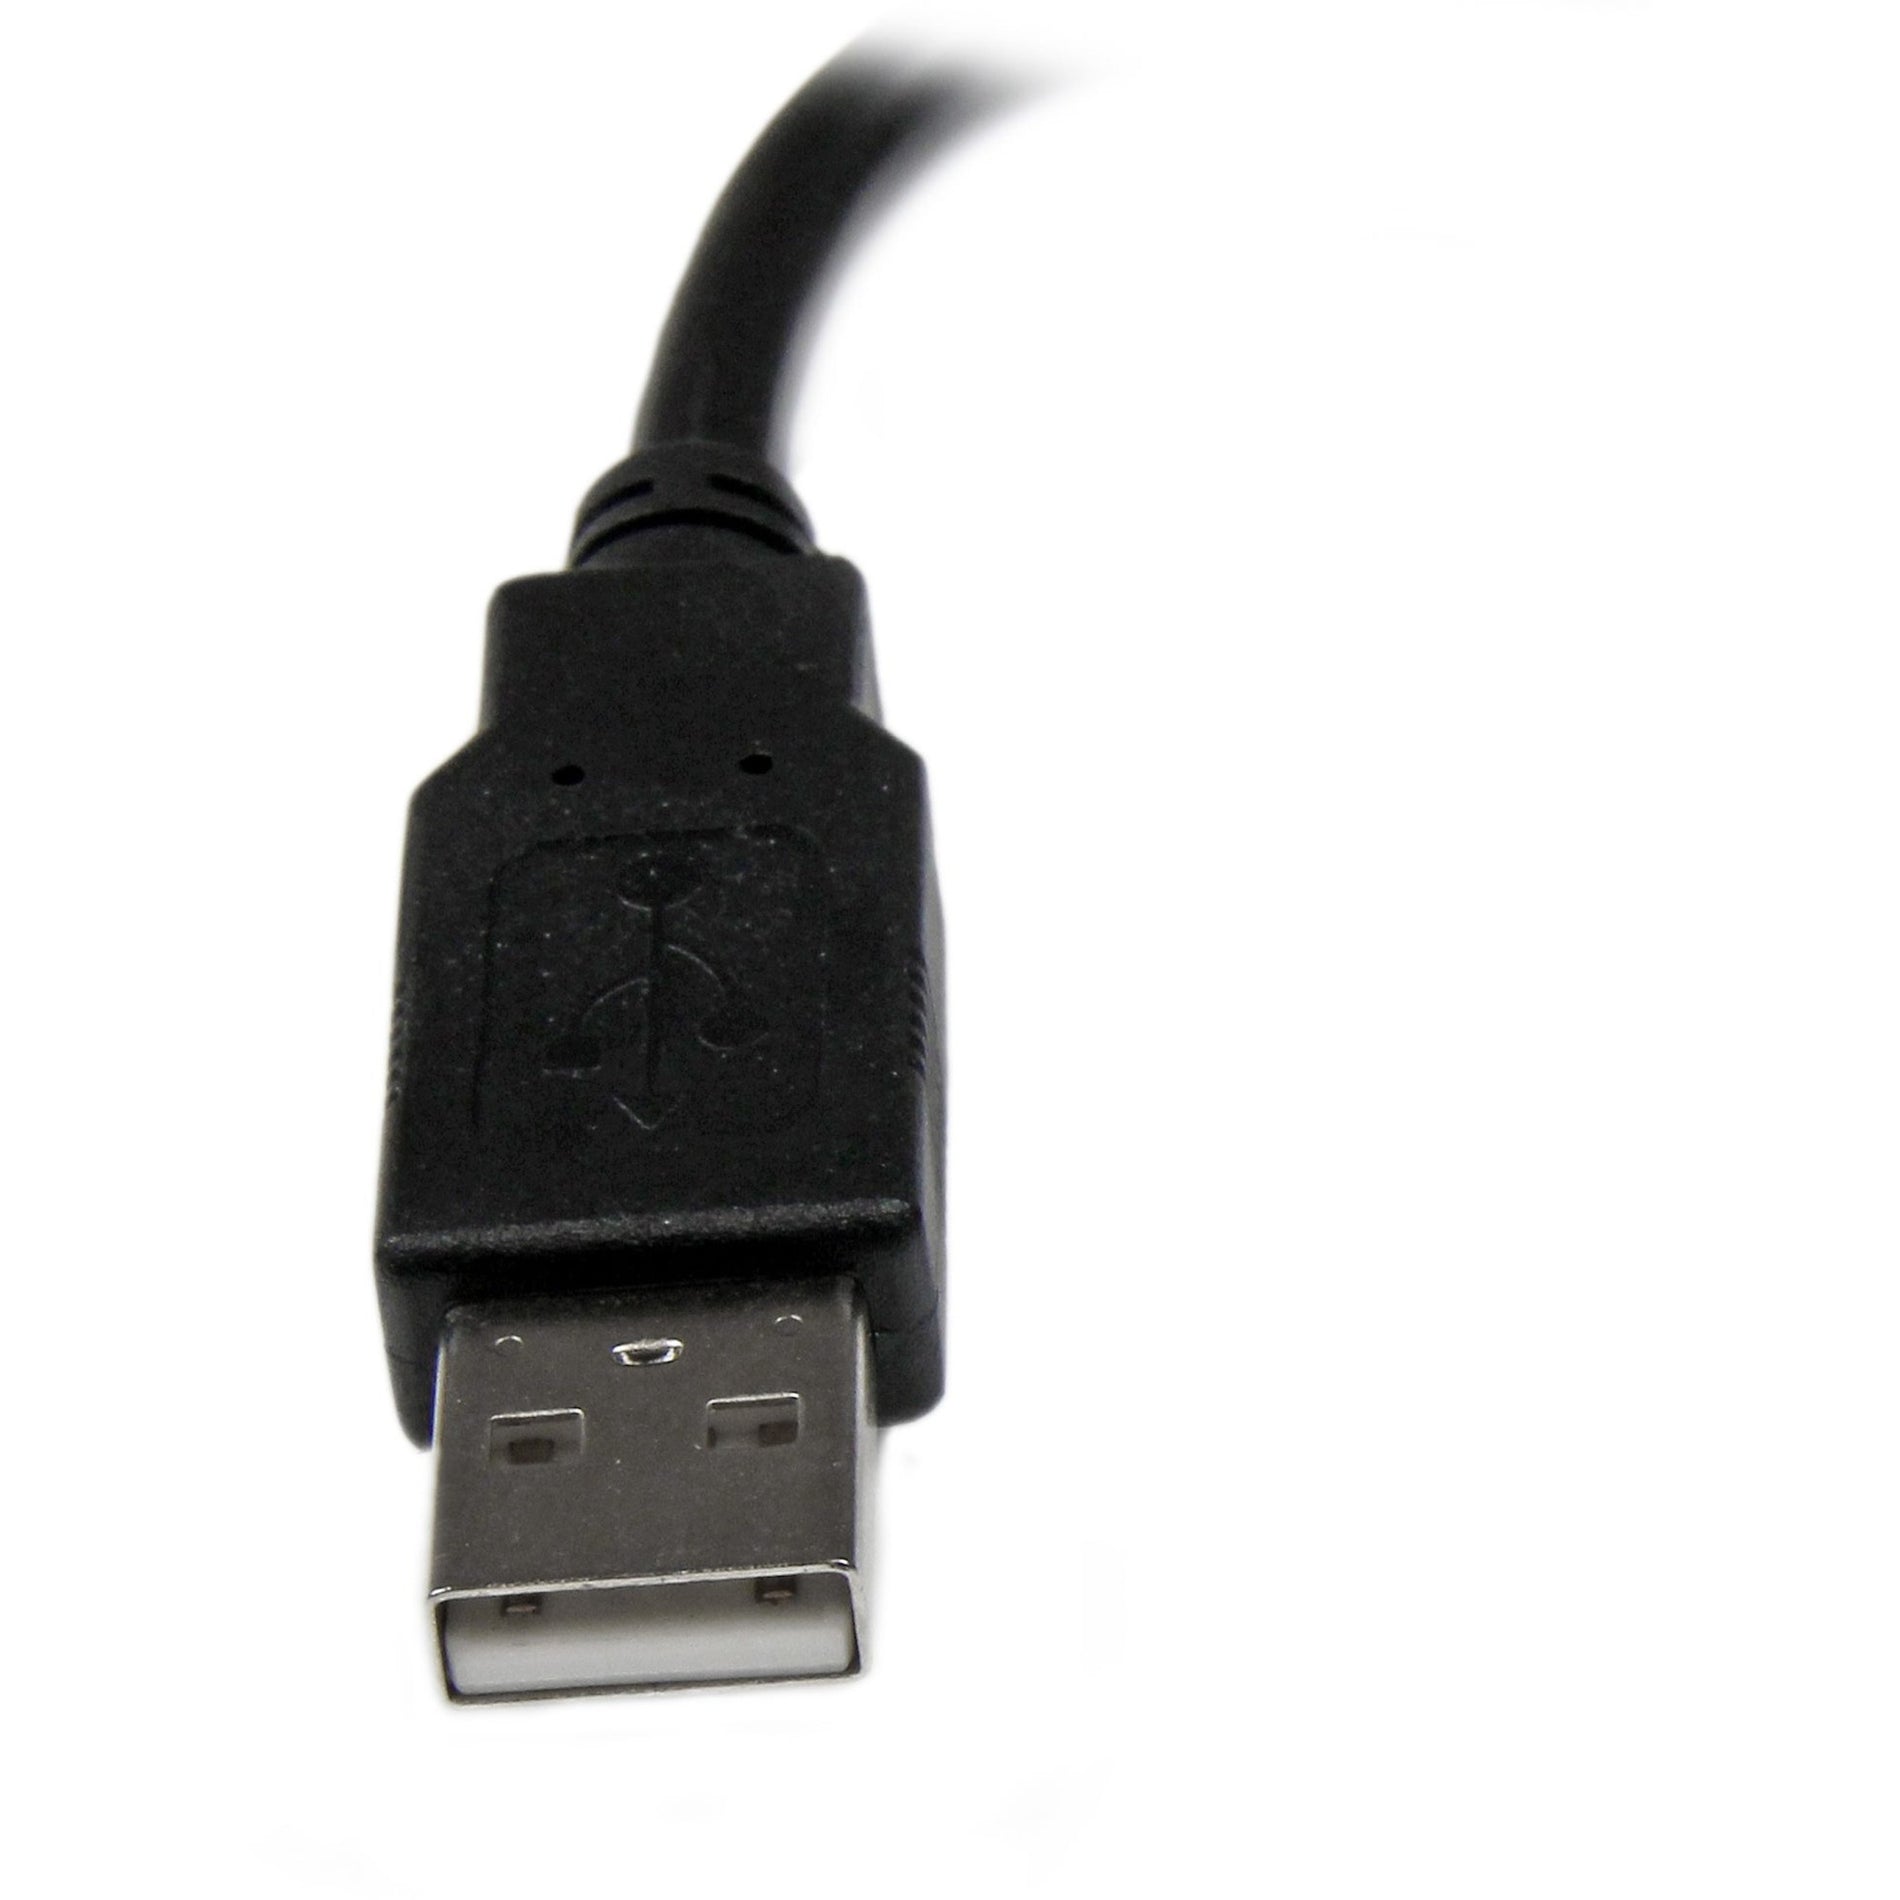 星美科技.com USBEXTAA6IN 6in USB 2.0 延长适配器线 A 到 A - M/F 数据传输线 星美科技 数据传输线